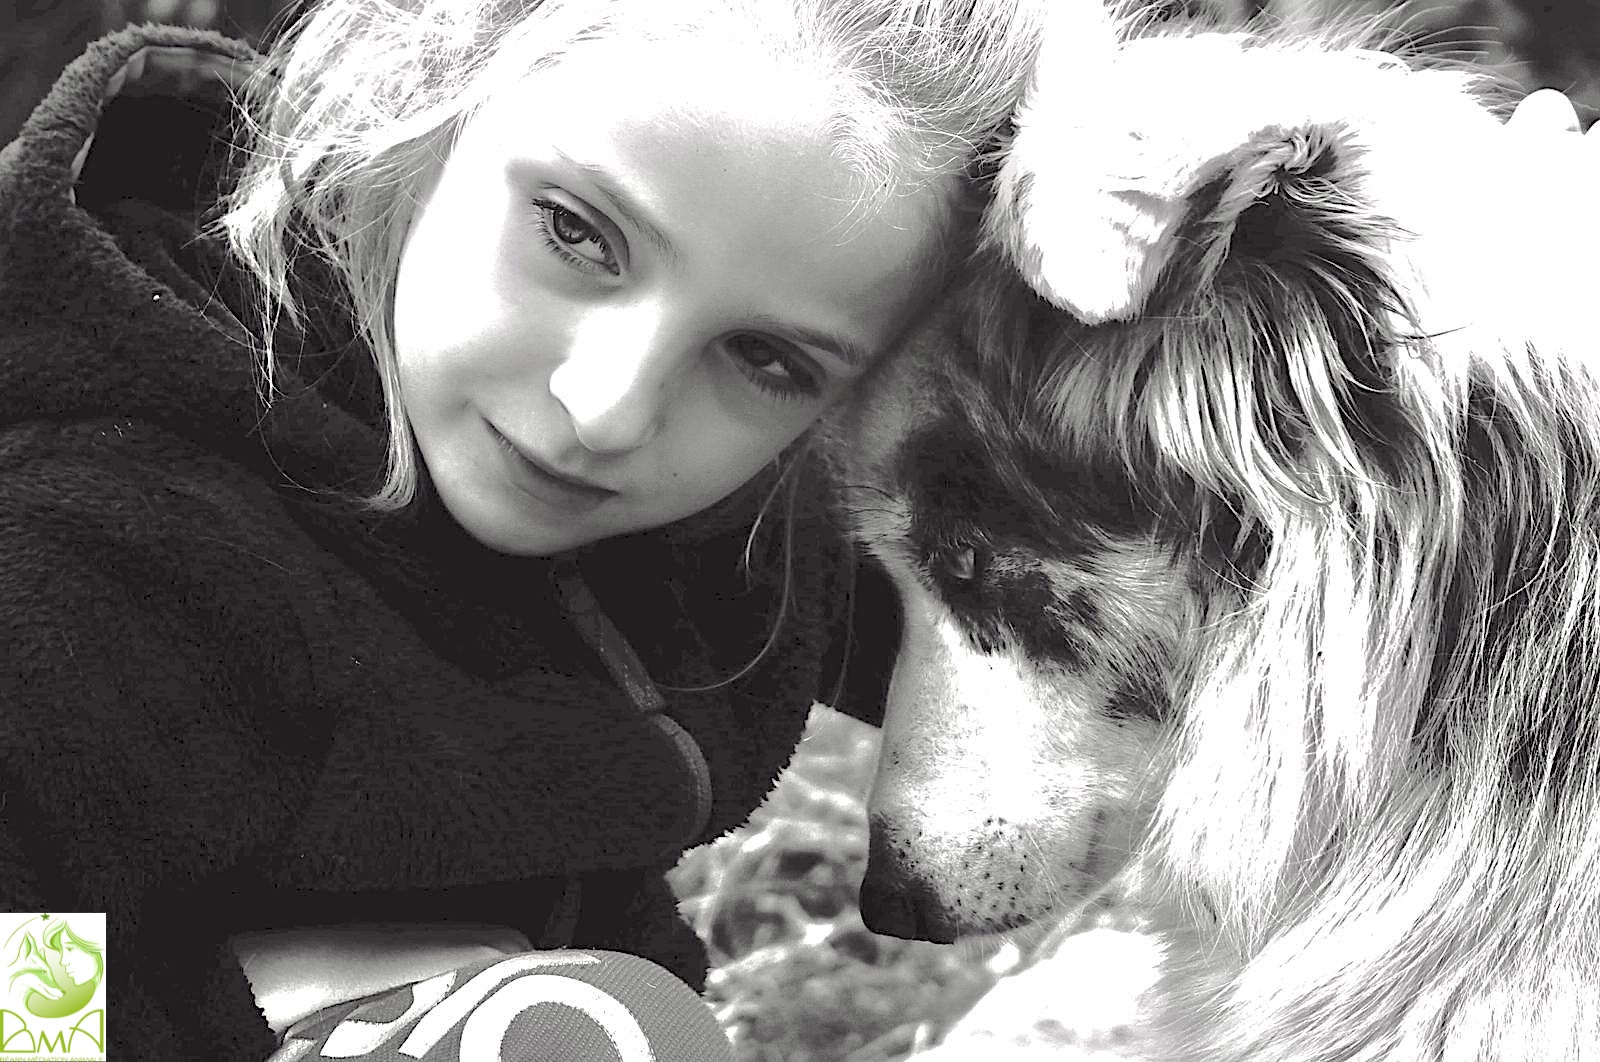 Médiation animale avec le chien Écho. Photographie : Chloé Brinon.